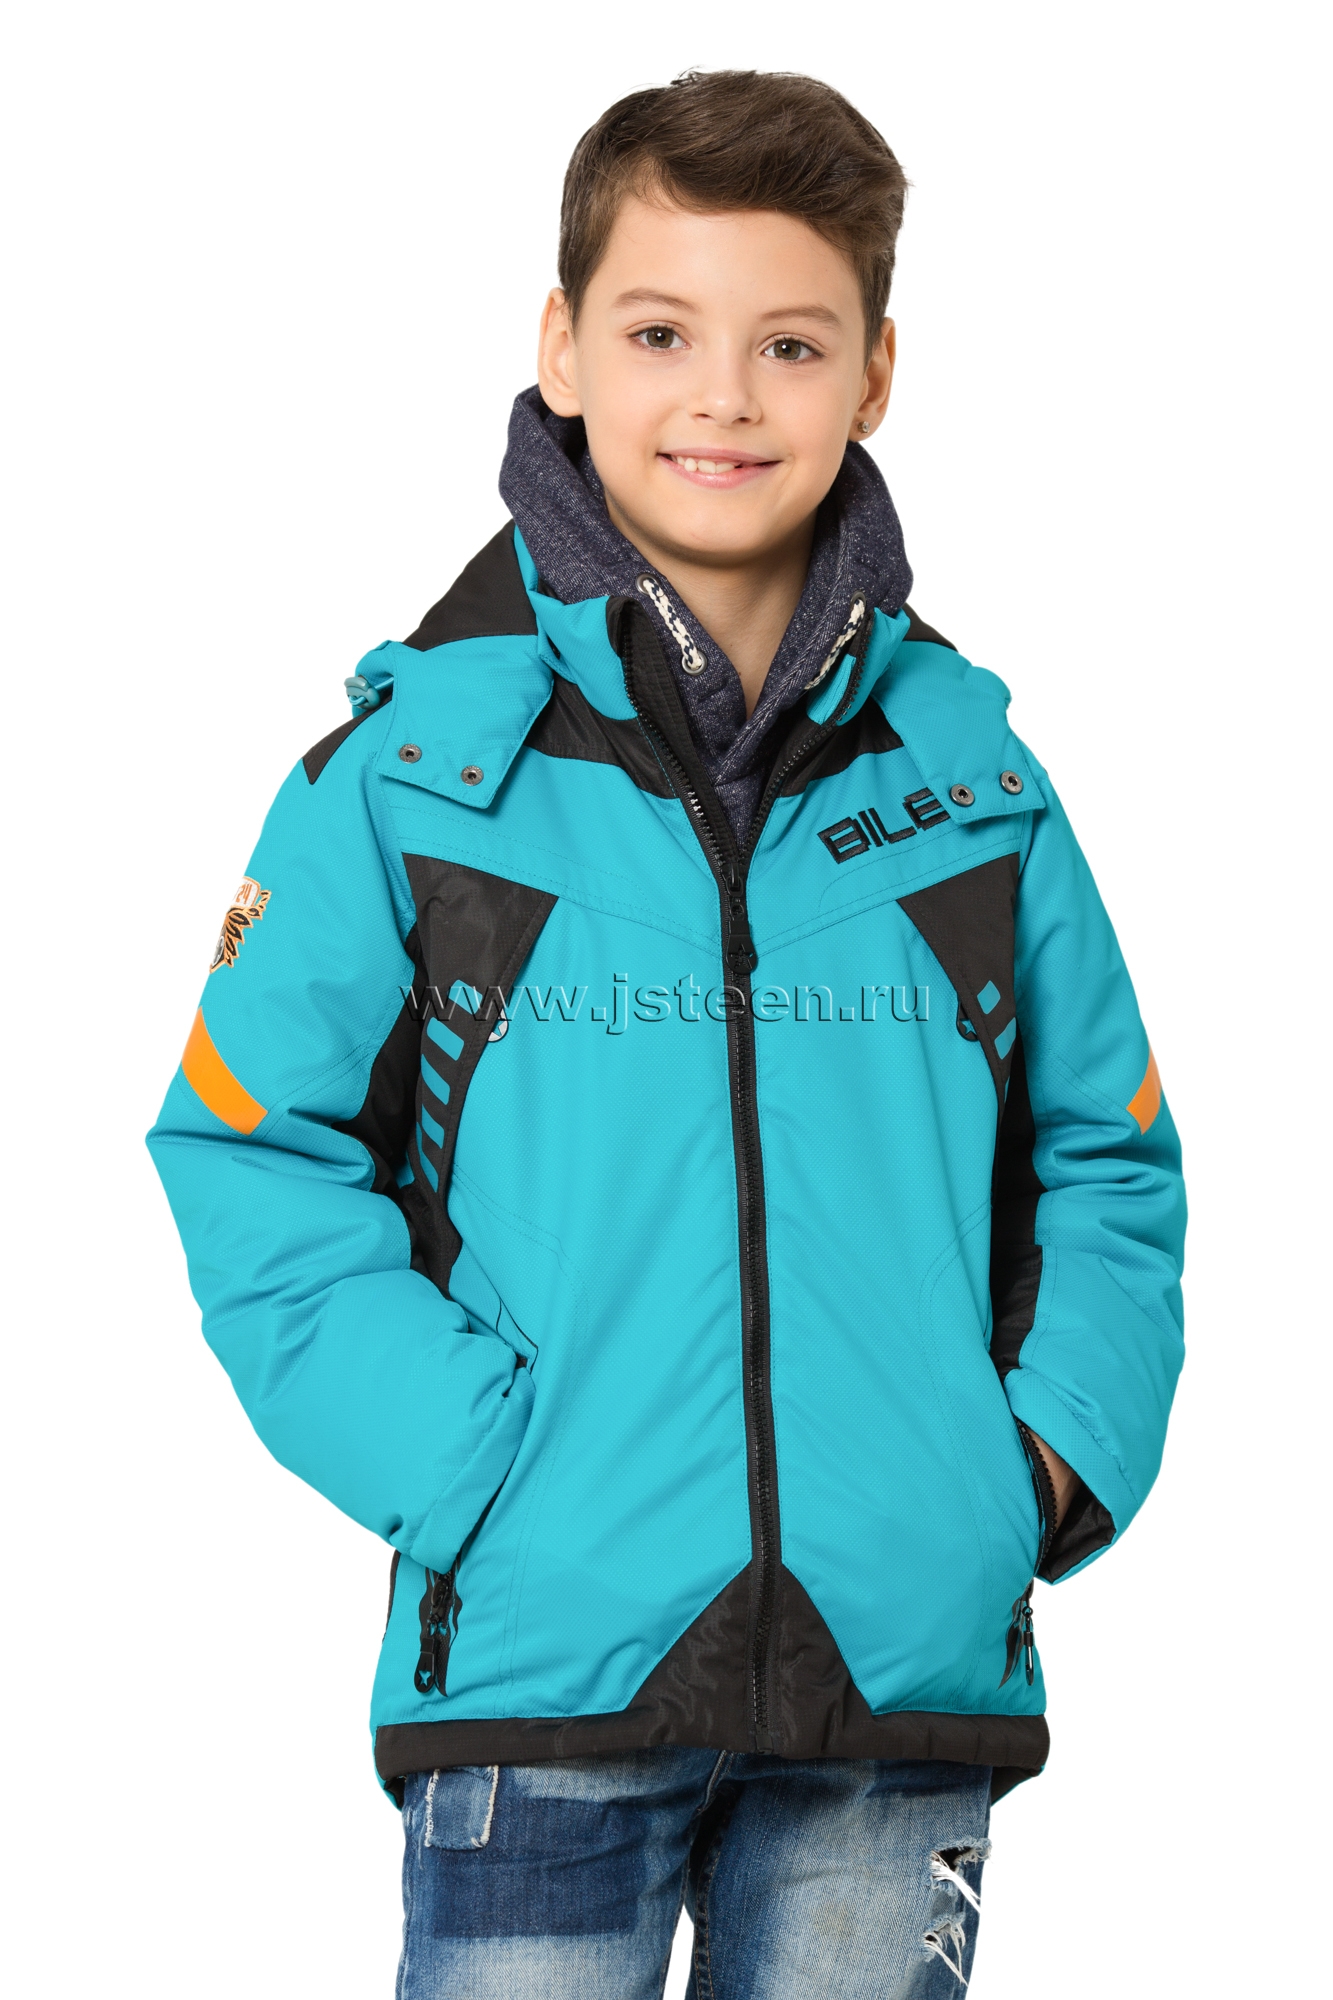 Куртки на весну подростковые. Детская куртка Bilemi. Куртка для подростка мальчика. Куртка подростковая демисезонная для мальчика. Весенняя куртка для мальчика.